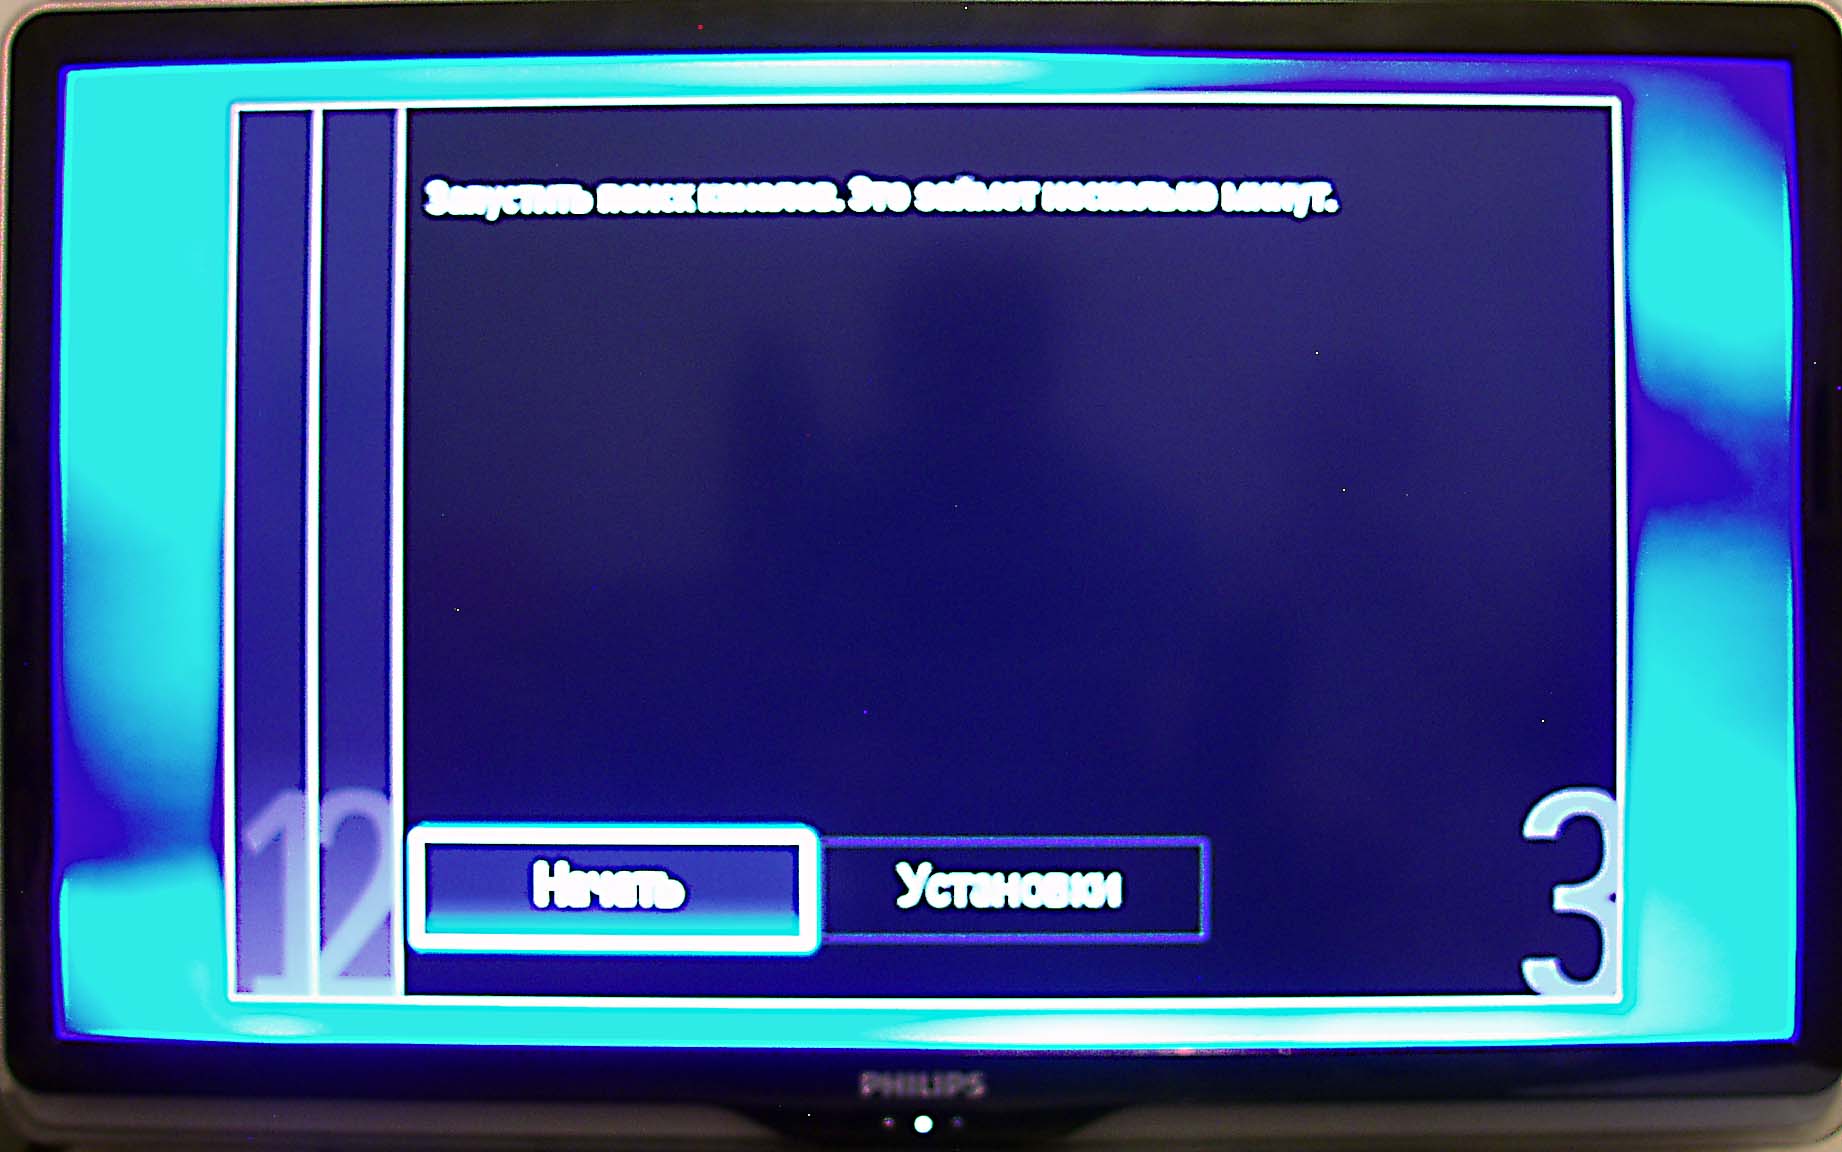 Телевизор сам перезагружается. Канал зашифрован на телевизоре. Поиск цифровых каналов на телевизоре Philips. Как на телевизоре настроить зашифрованные каналы Филипс. Зашифрованная передача на телевизоре Philips что делать.